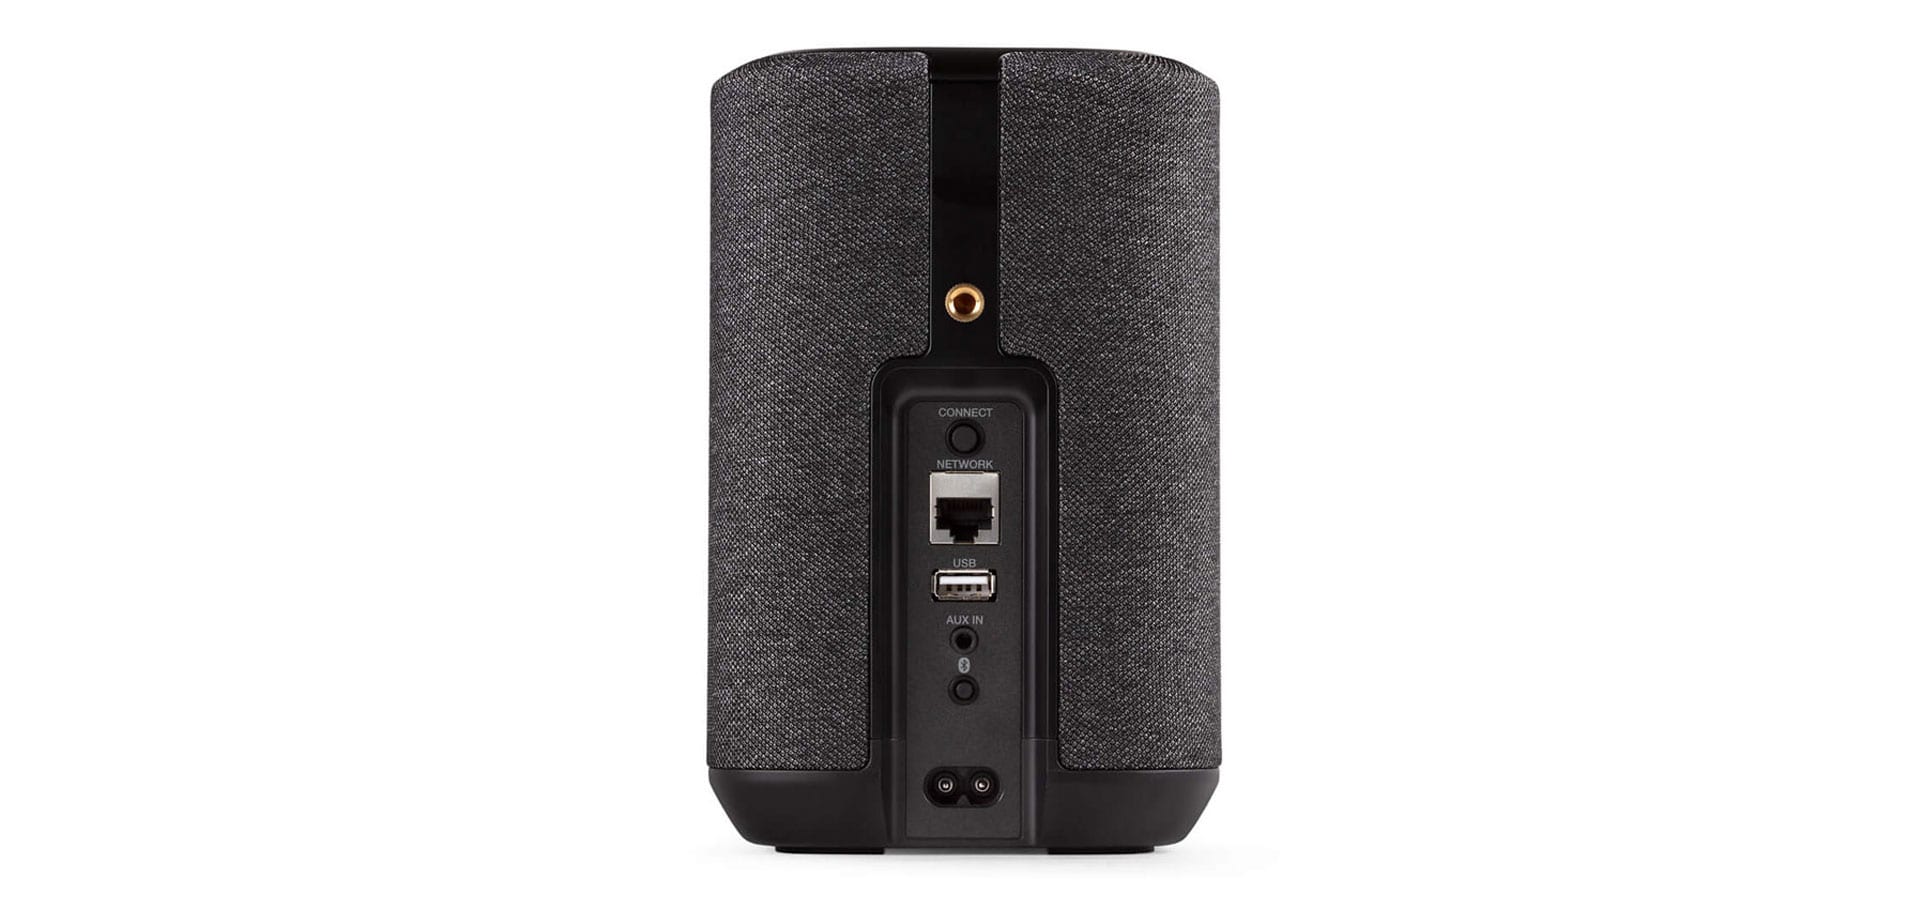 Airplay schwarz Cyberport HOME ++ 2, Multiroom-Lautsprecher Bluetooth, 150 Denon mit WLAN,